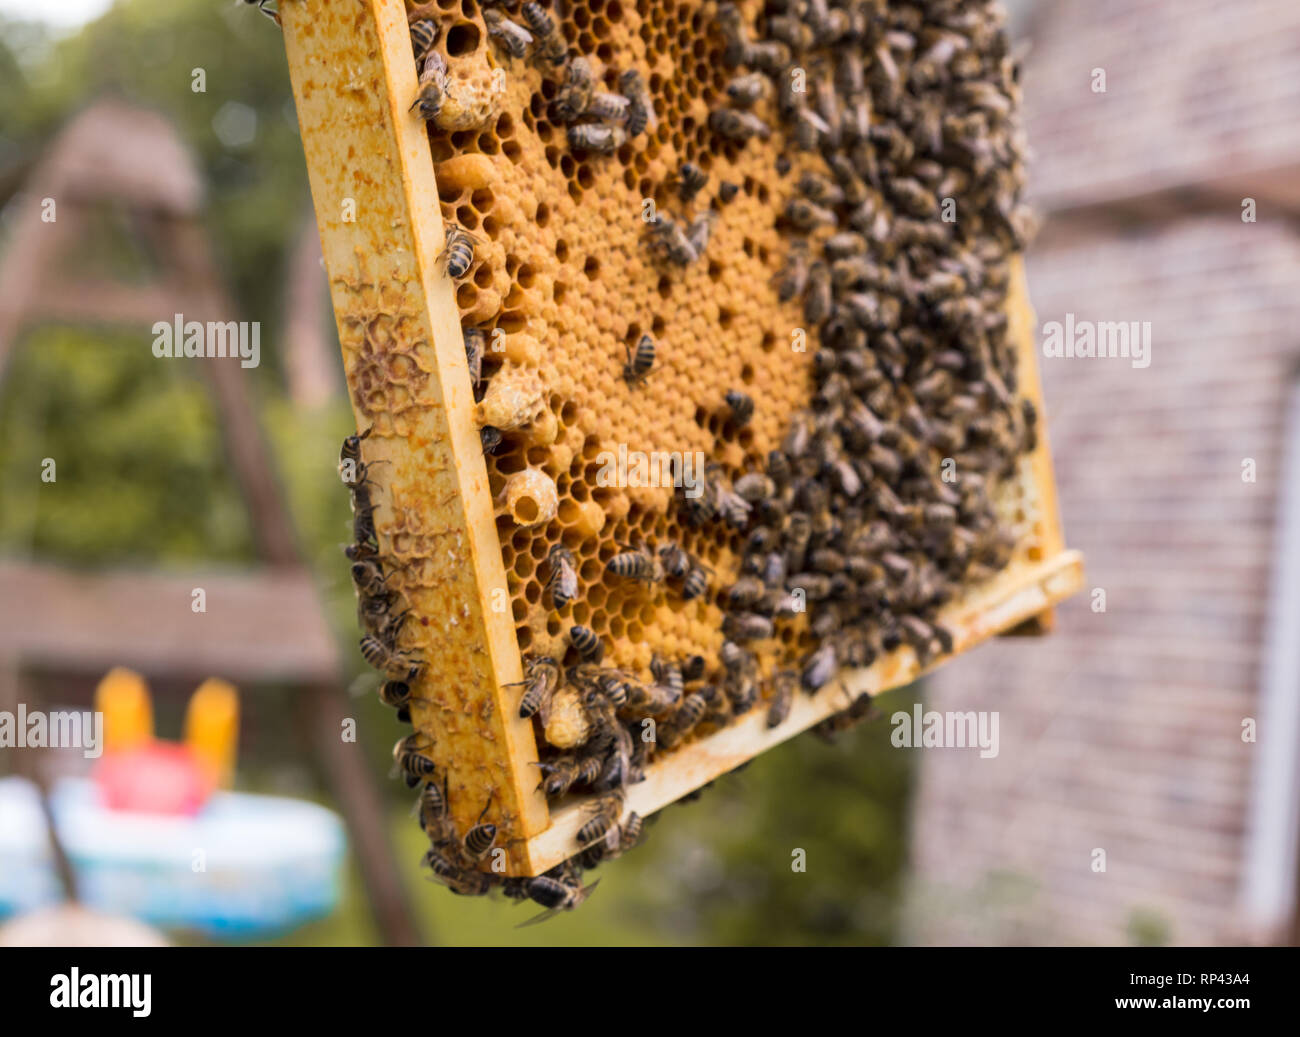 Frames eines Bienenstocks mit offenen und geschlossenen Brutzellen einer Wabe. Die Bienen Praxis Brutpflege. In einem offenen Königin Zelle suchen. Stockfoto